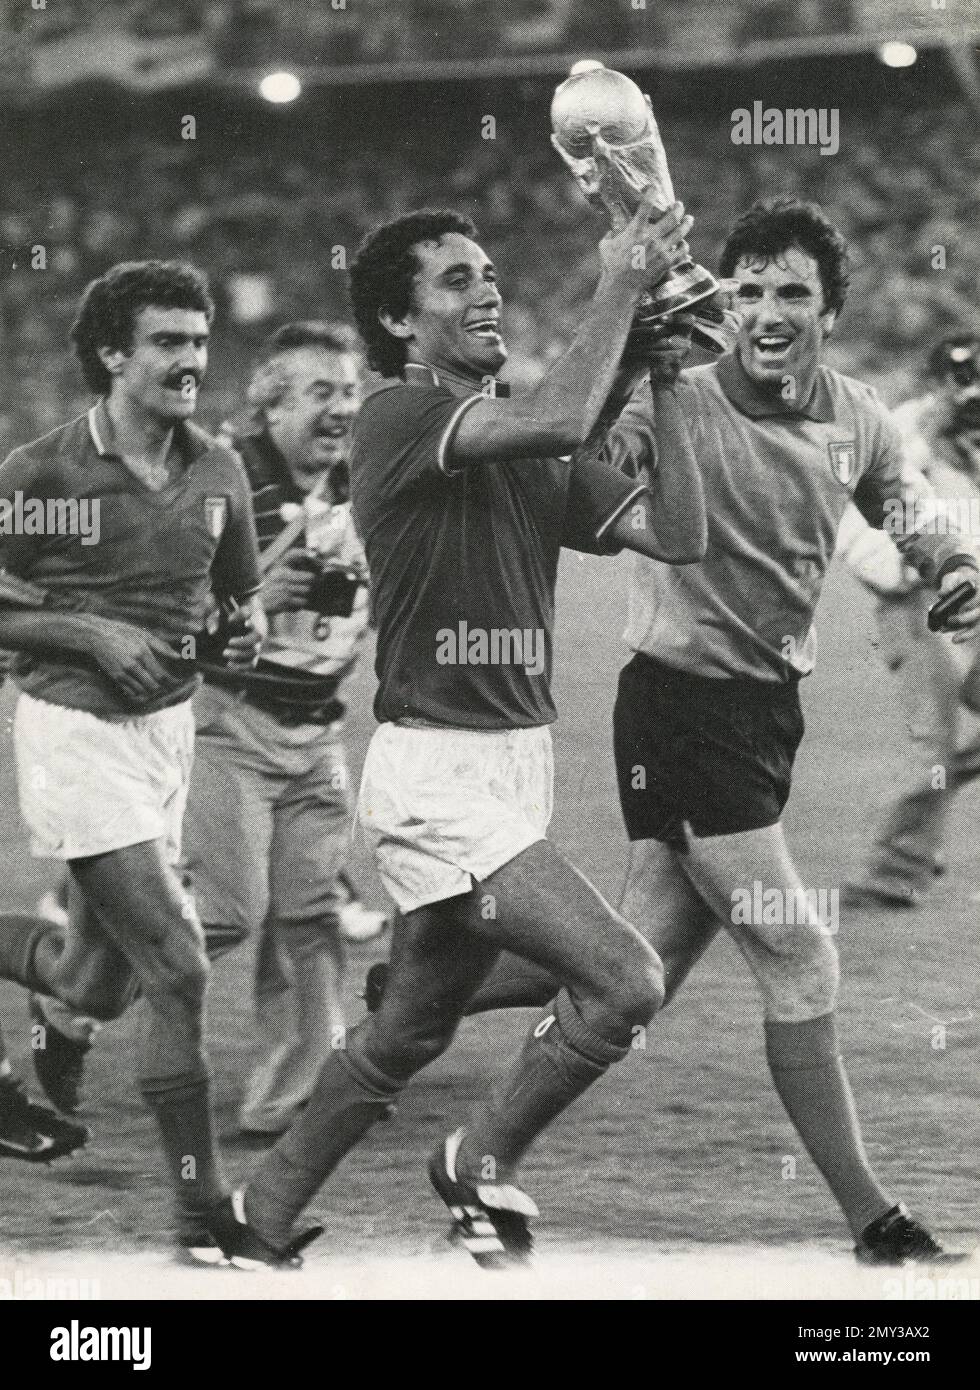 Italienische Fußballspieler (von links) Bergomi, Gentile und Zoff, nachdem Italien die Weltmeisterschaft gewonnen hat, Spanien 1982 Stockfoto